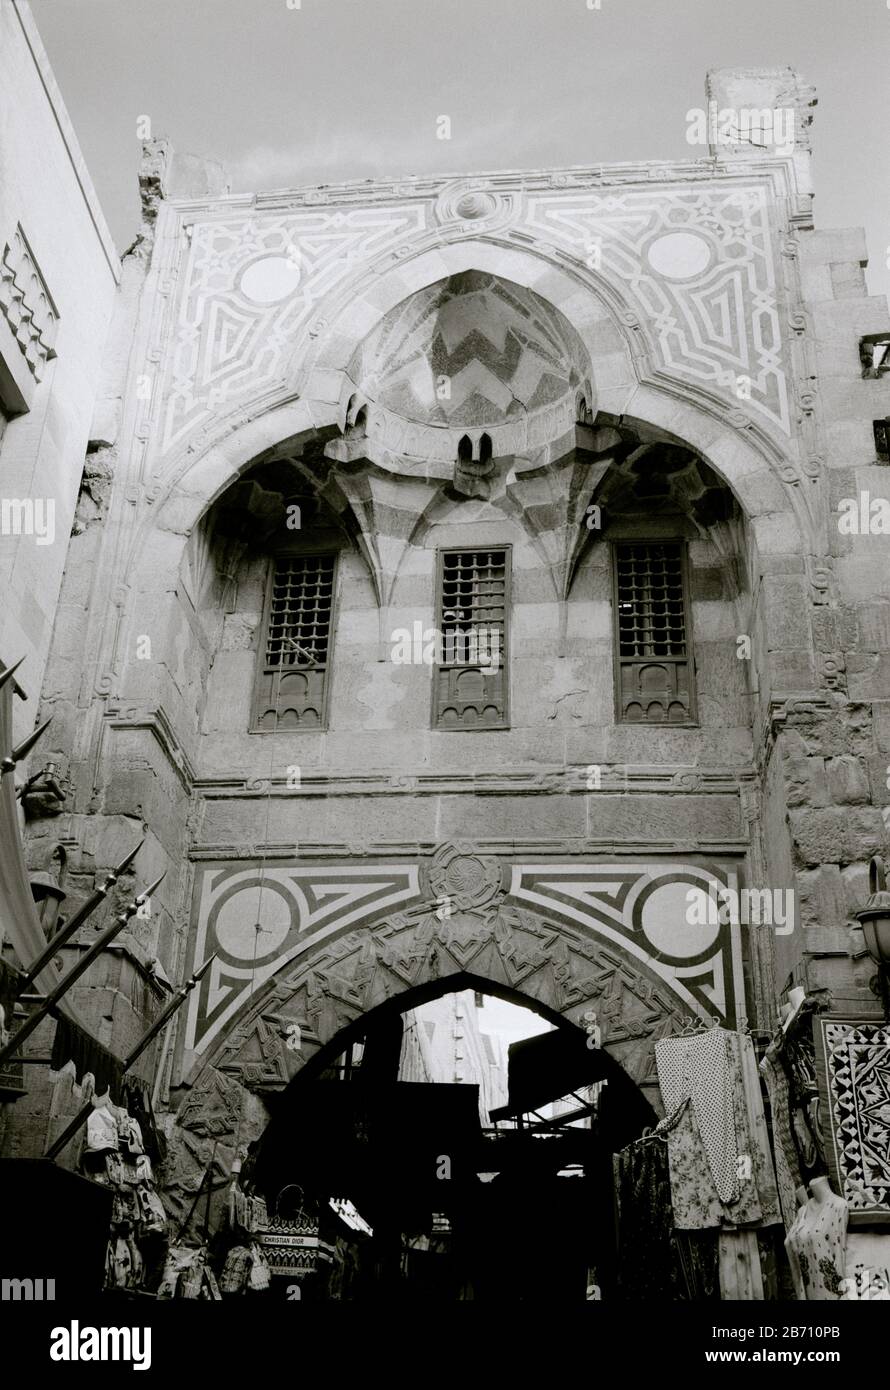 Fotografia di viaggio in bianco e nero - Archway nel mercato turistico di Khan al o El Khalili nel Cairo islamico in Egitto in Africa del Nord Medio Oriente Foto Stock